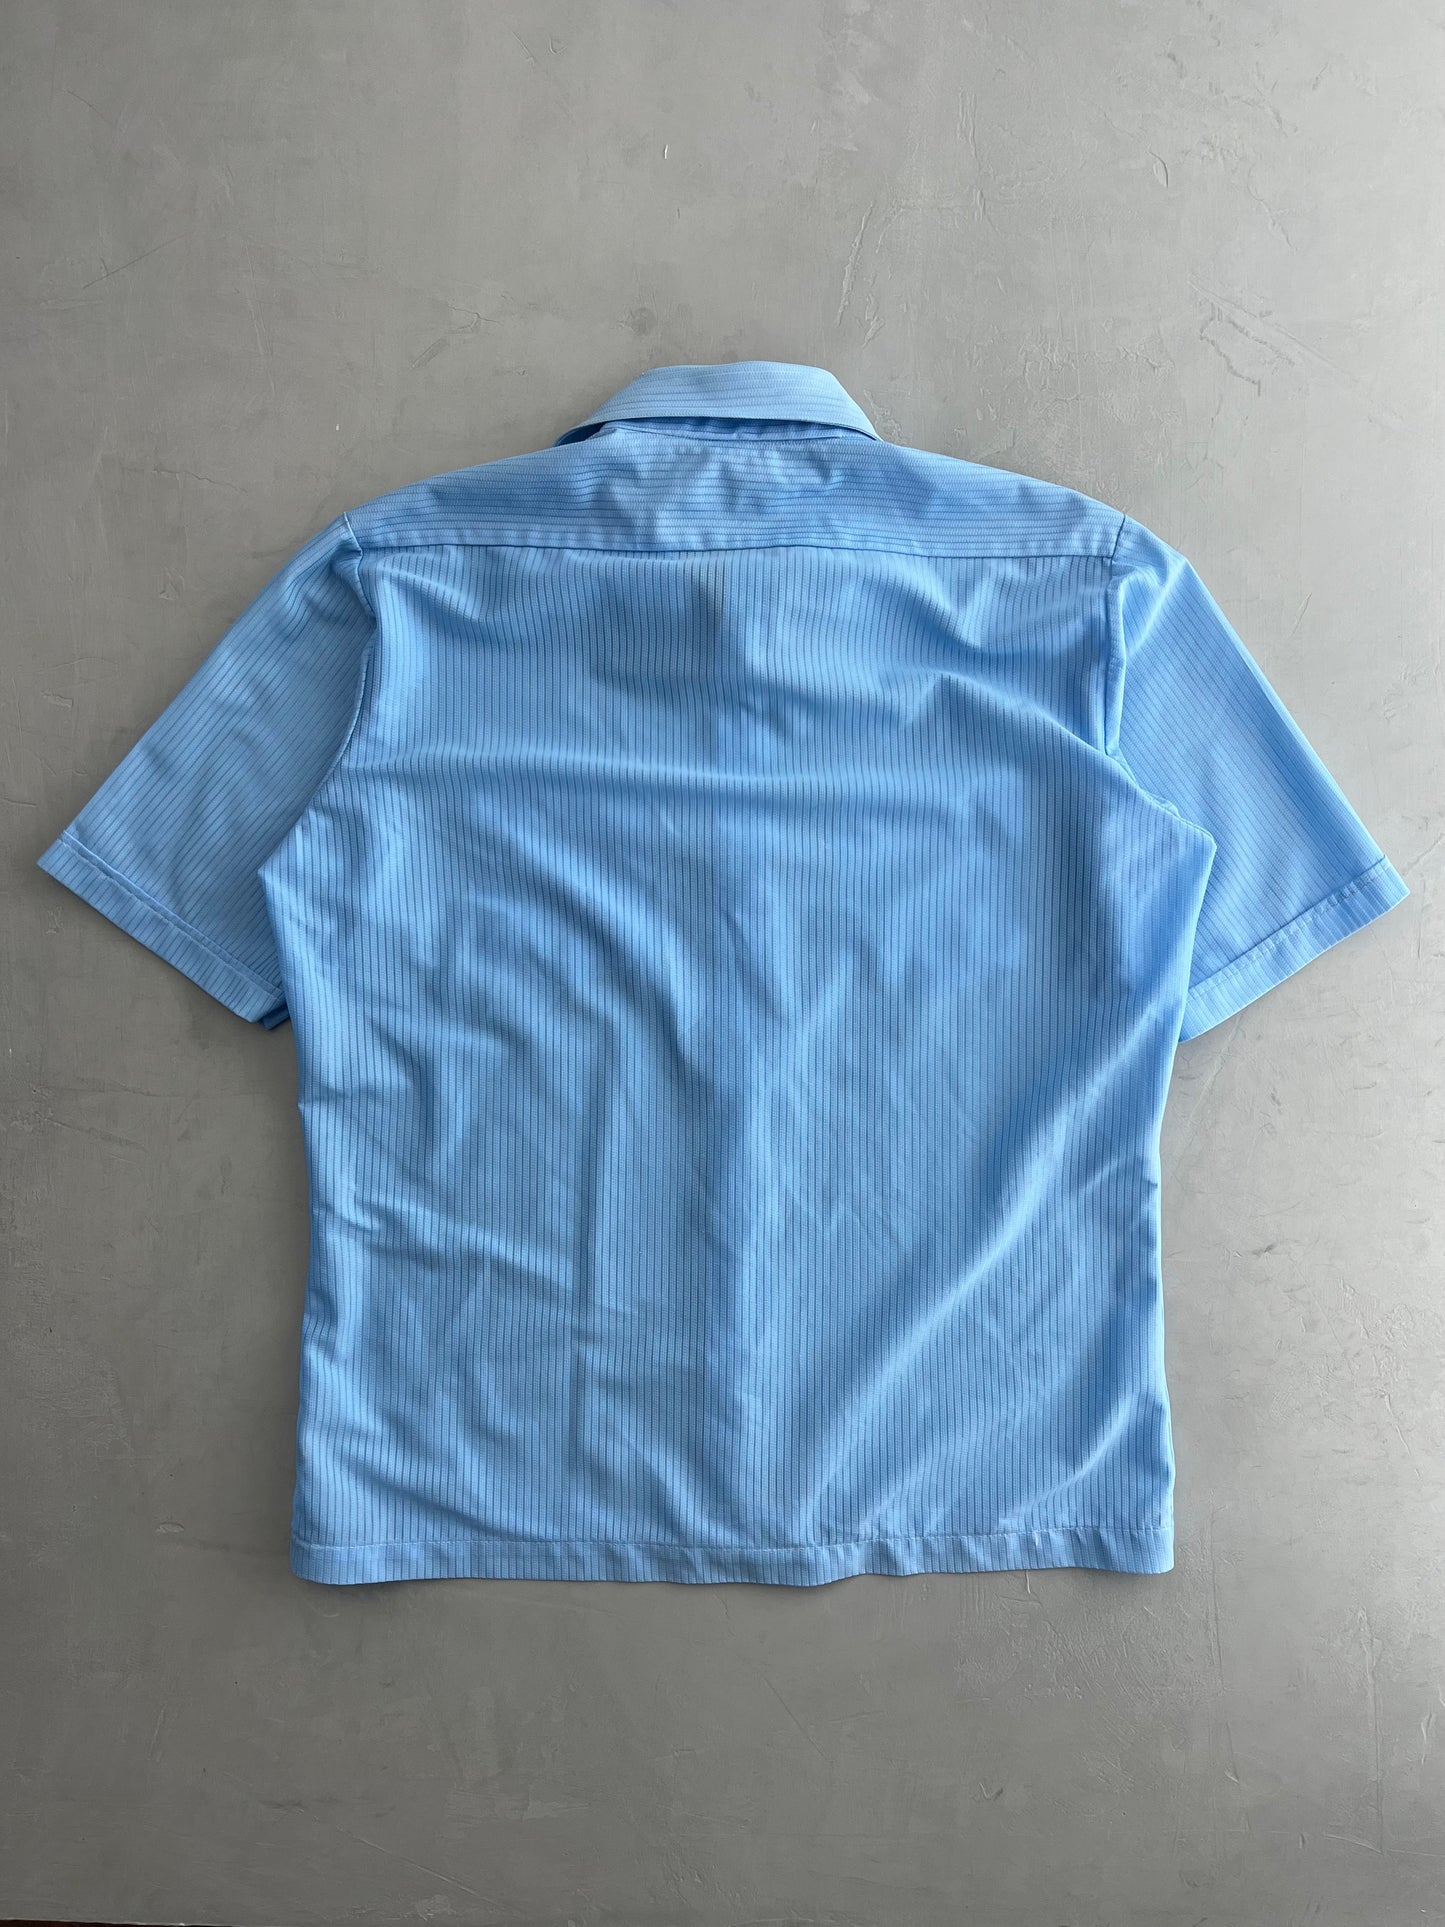 Montgomery Ward Kool Knits Shirt [L]